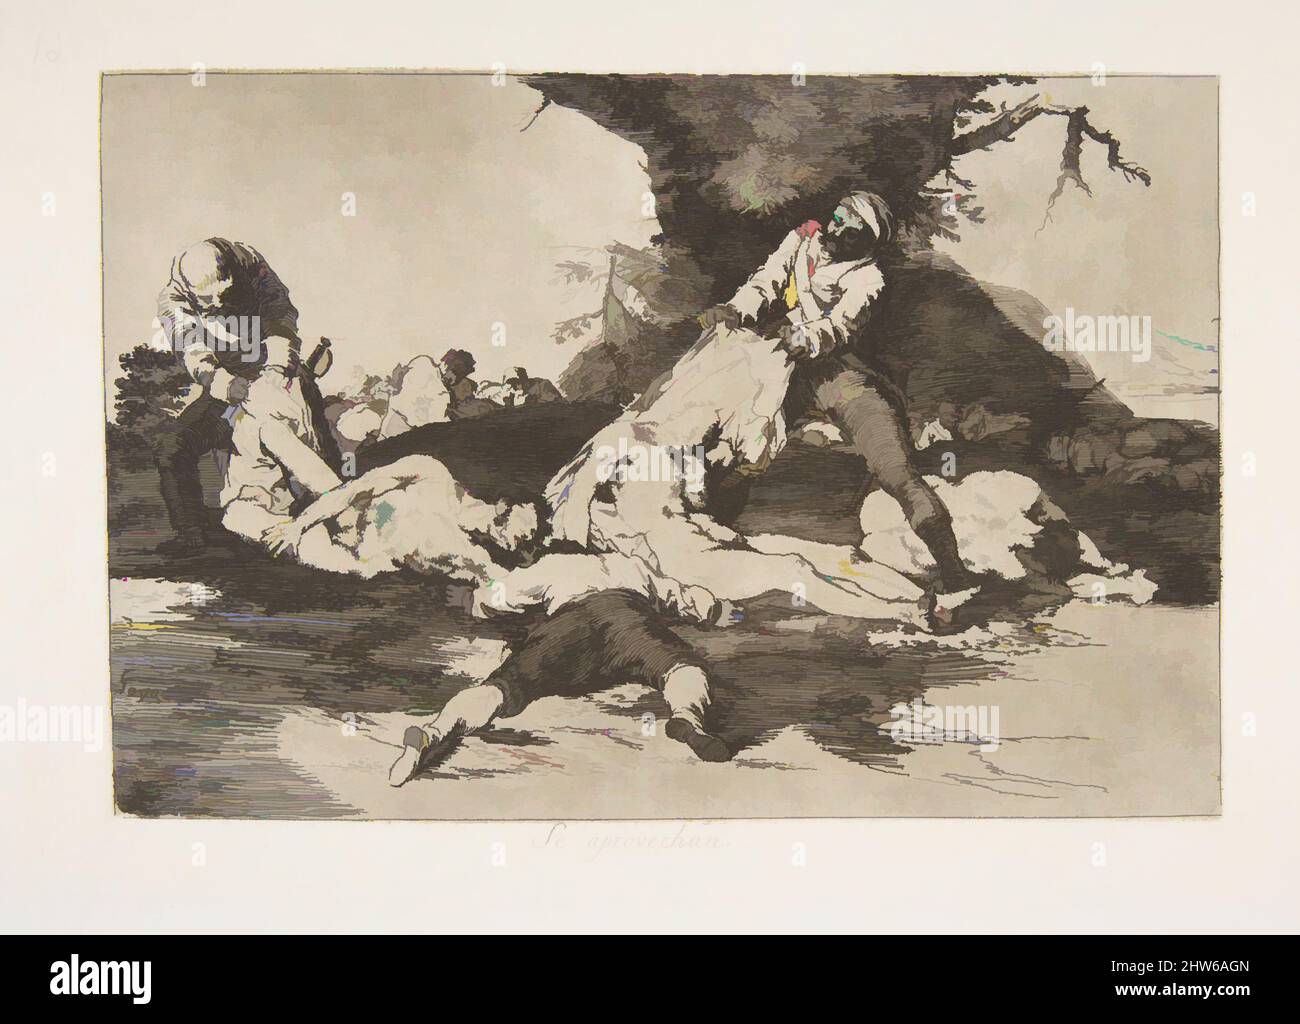 Art inspiré par la planche 16 de « les désastres de la guerre » (Los Desastres de la Guerra) : ils en font usage. » (Se aprovechan.), 1810 ( publié en 1863), Etching, lavis, Drypoint, burin et burnisher, Plaque : 6 5/16 × 9 1/4 po (16 × 23,5 cm), Prints, Goya (Francisco de Goya y Lucientes, oeuvres classiques modernisées par Artotop avec une touche de modernité. Formes, couleur et valeur, impact visuel accrocheur sur l'art émotions par la liberté d'œuvres d'art d'une manière contemporaine. Un message intemporel qui cherche une nouvelle direction créative. Artistes qui se tournent vers le support numérique et créent le NFT Artotop Banque D'Images